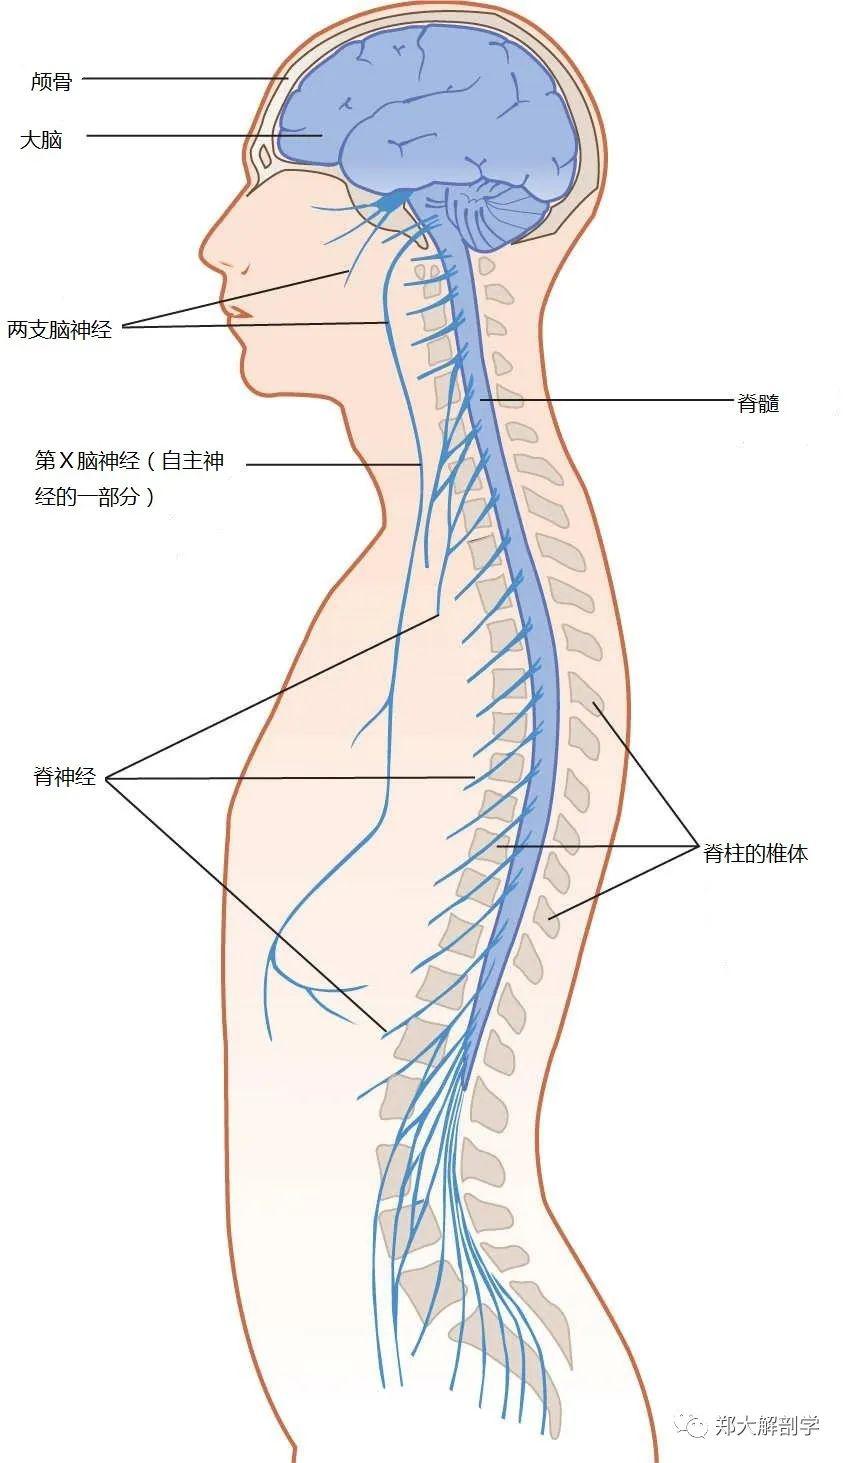 (1)中枢神经系统:由脑和脊髓组成,被骨包围,由保护膜(脑脊膜)缠绕并